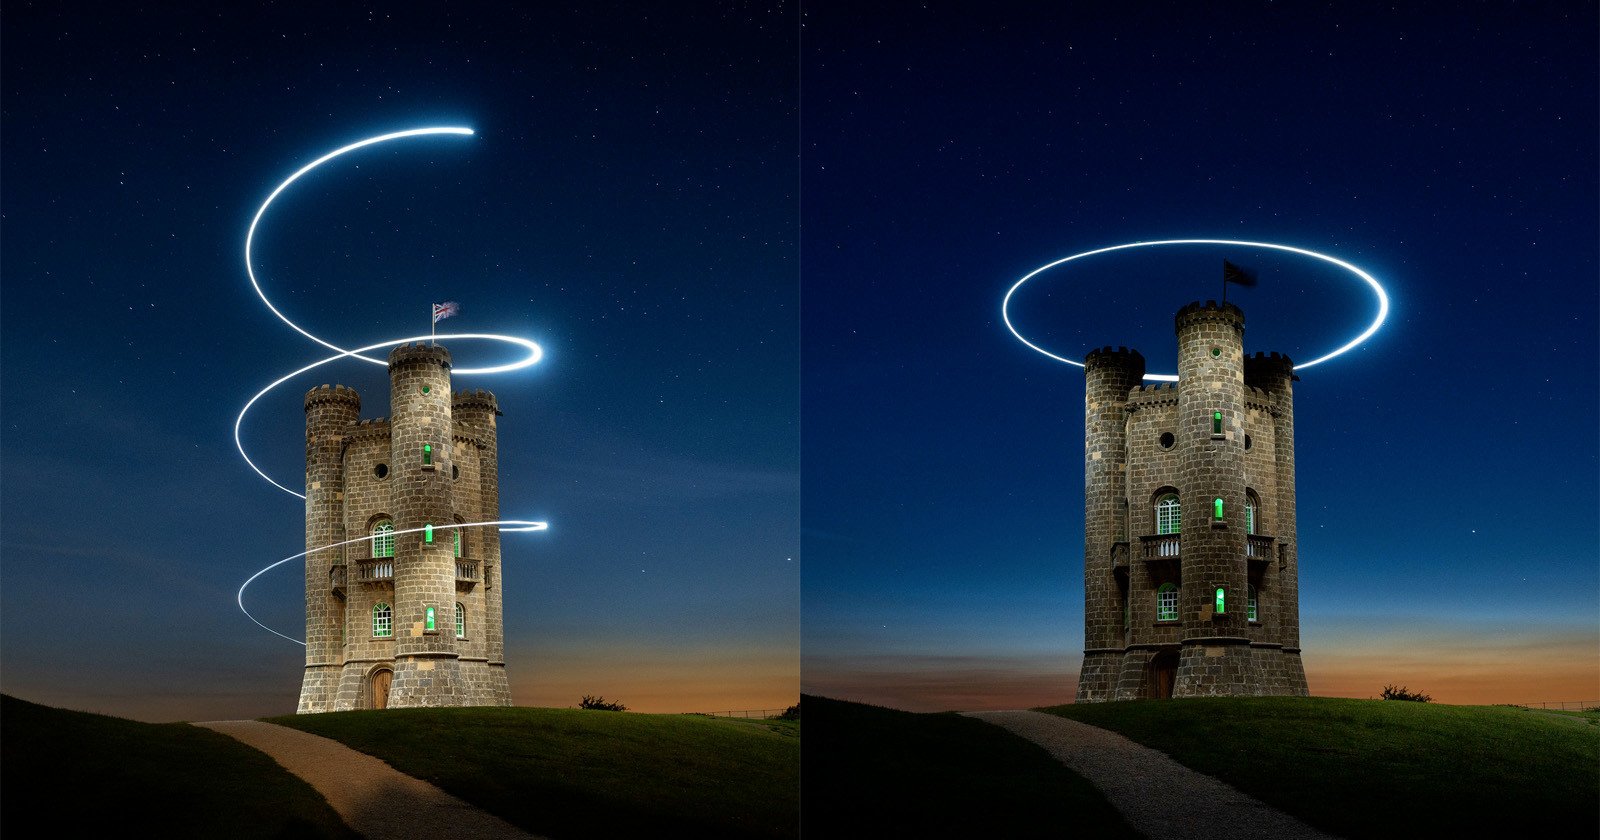  drone-mounted led gorgeously illuminates photo british tower 